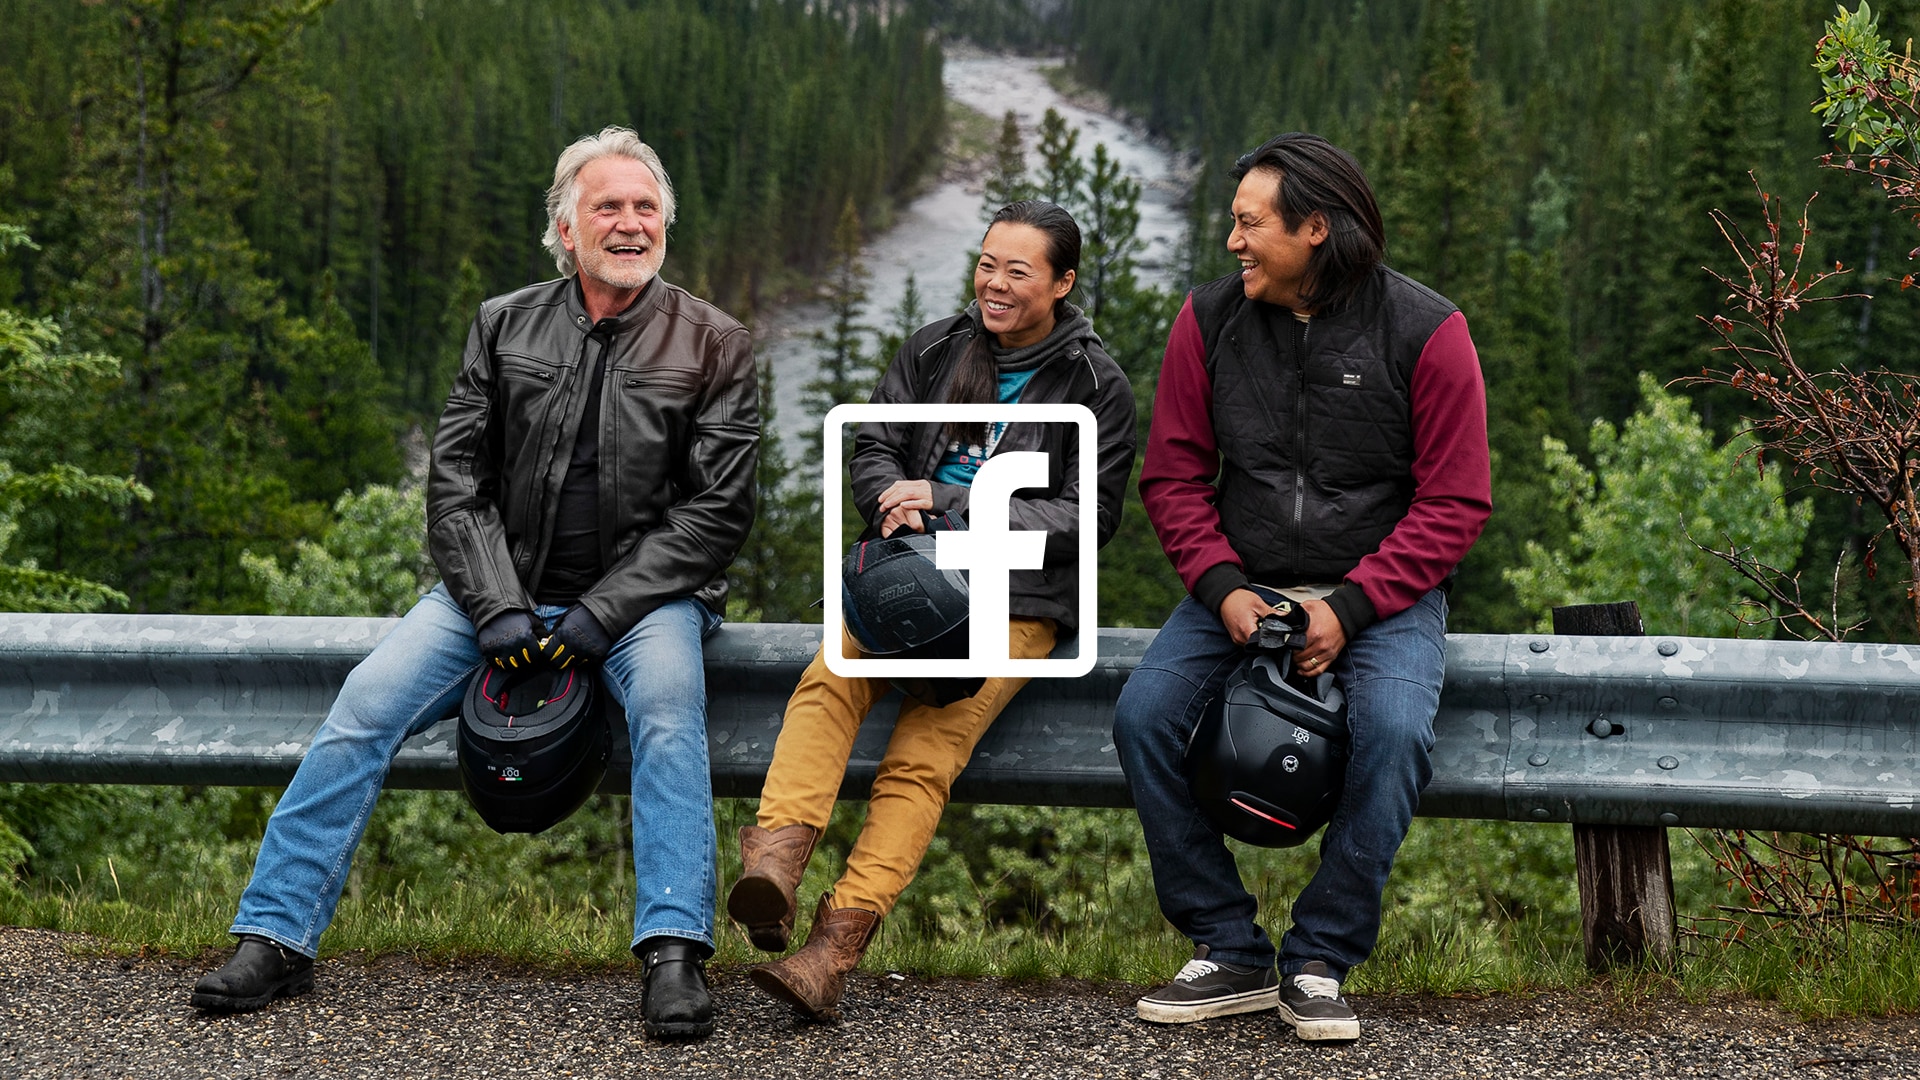 Trois personnes riant et parlant avec un logo Facebook sur l'image